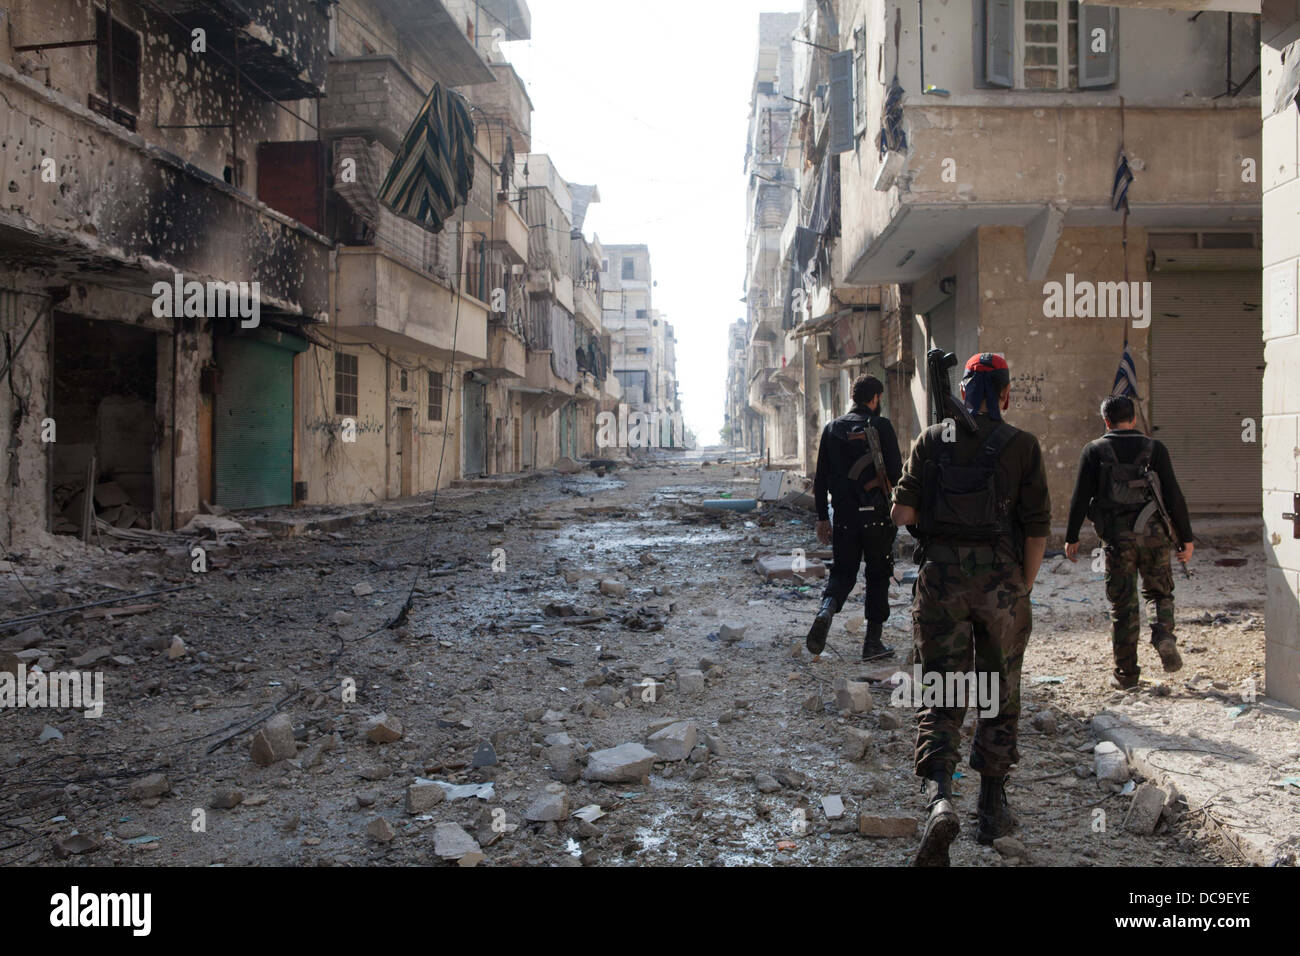 29. November 2012 - Aleppo, Syrien: Freie Syrische Armee Kämpfer zu Fuß durch den Krieg verwüsteten Straßen in Amaria. Stockfoto